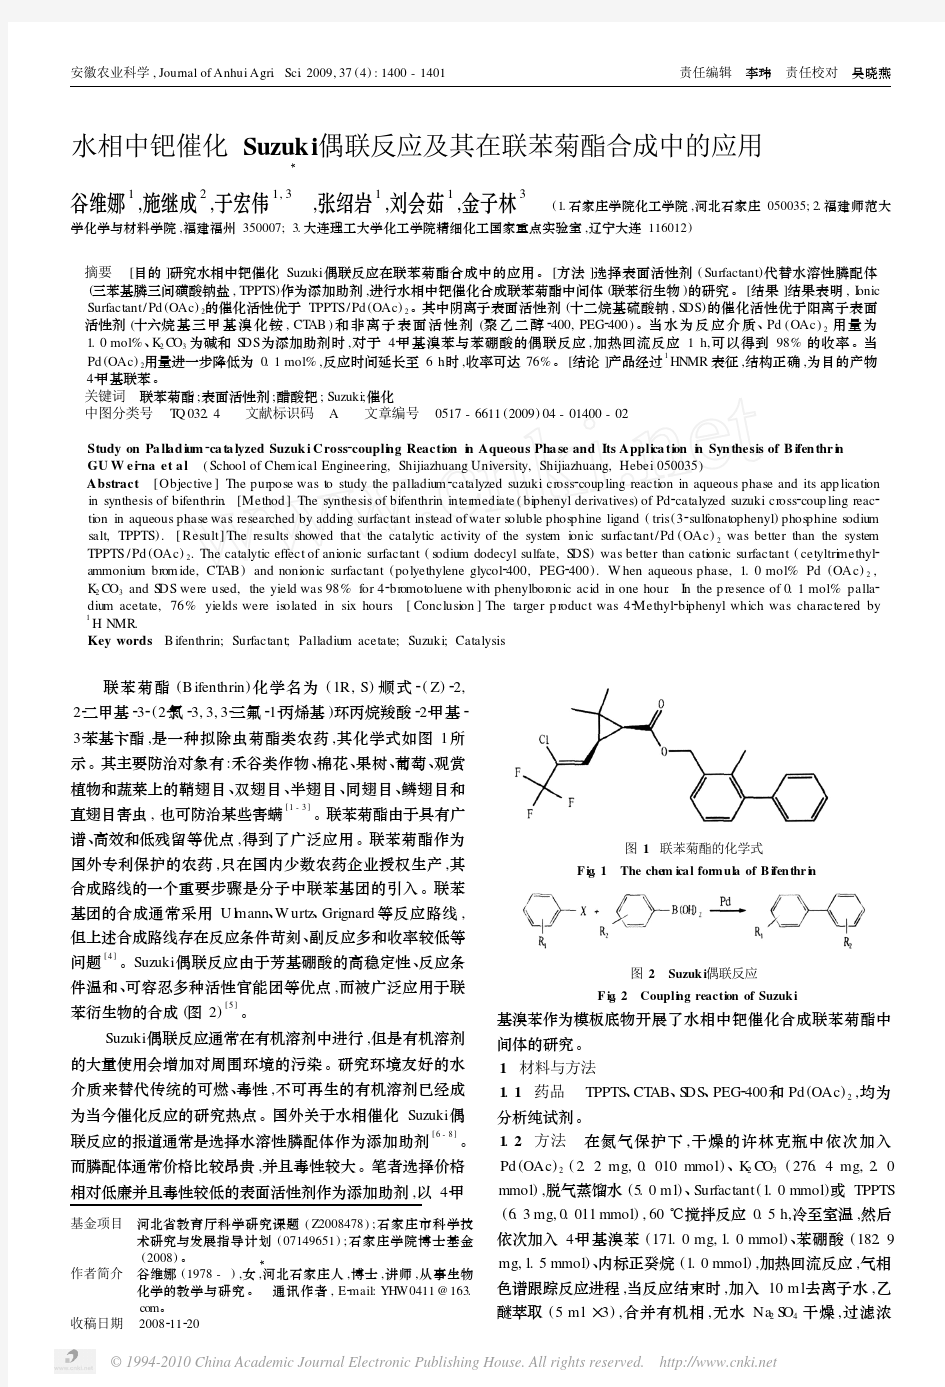 水相中钯催化Suzuki偶联反应及其在联苯菊酯合成中的应用